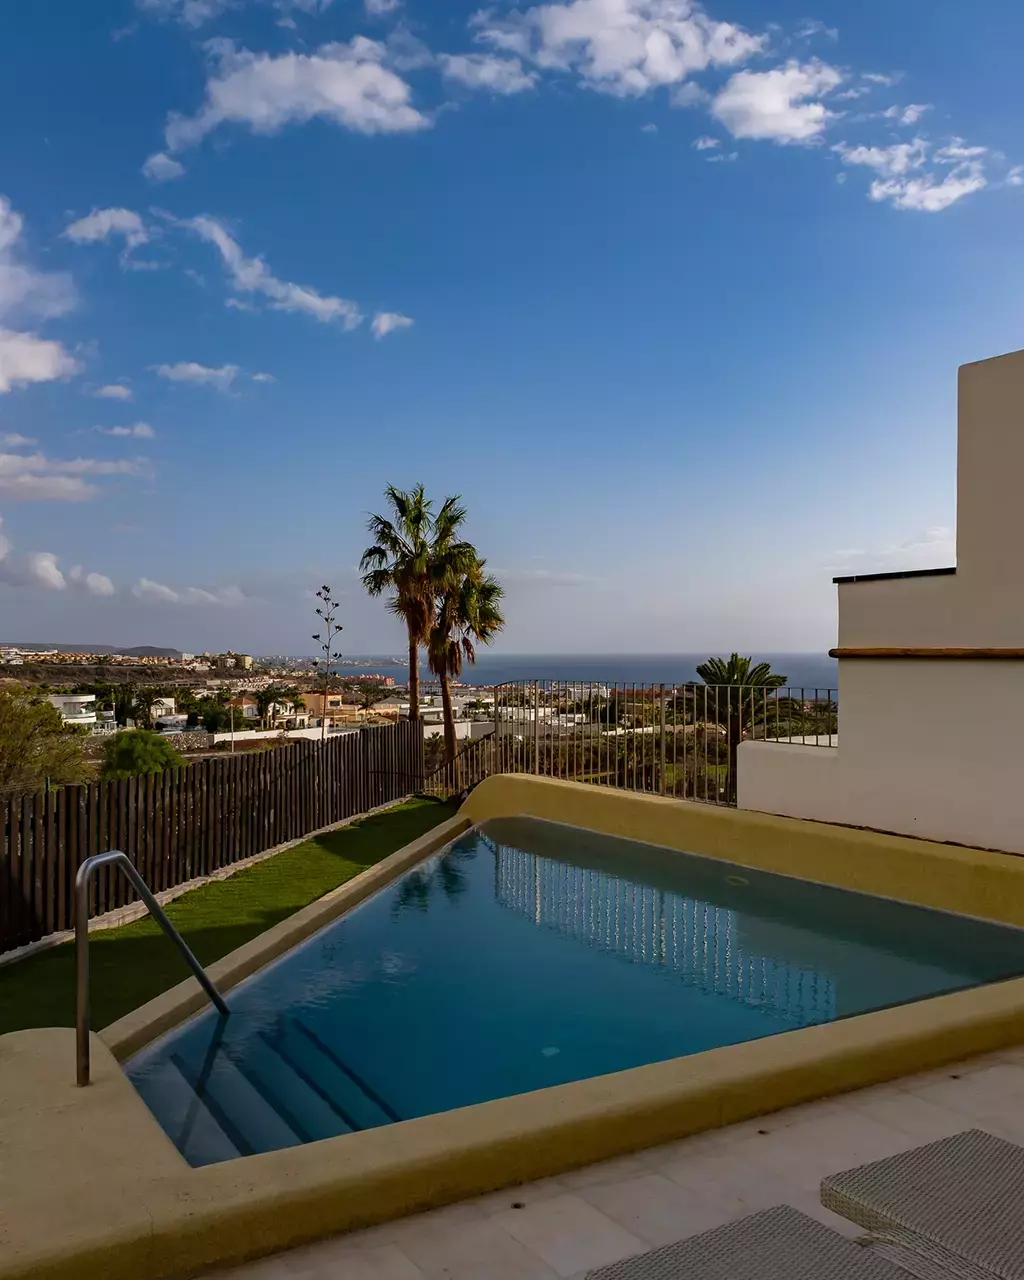 Hôtel Suite Villa Maria à Tenerife, notre avis et expérience - Emeraude Trip